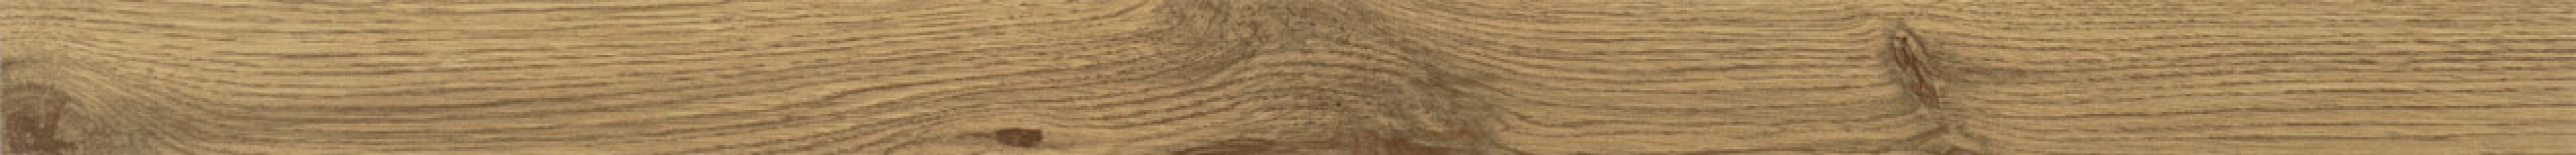 Бордюр Balance wood 89.8x5.4 Tubadzin